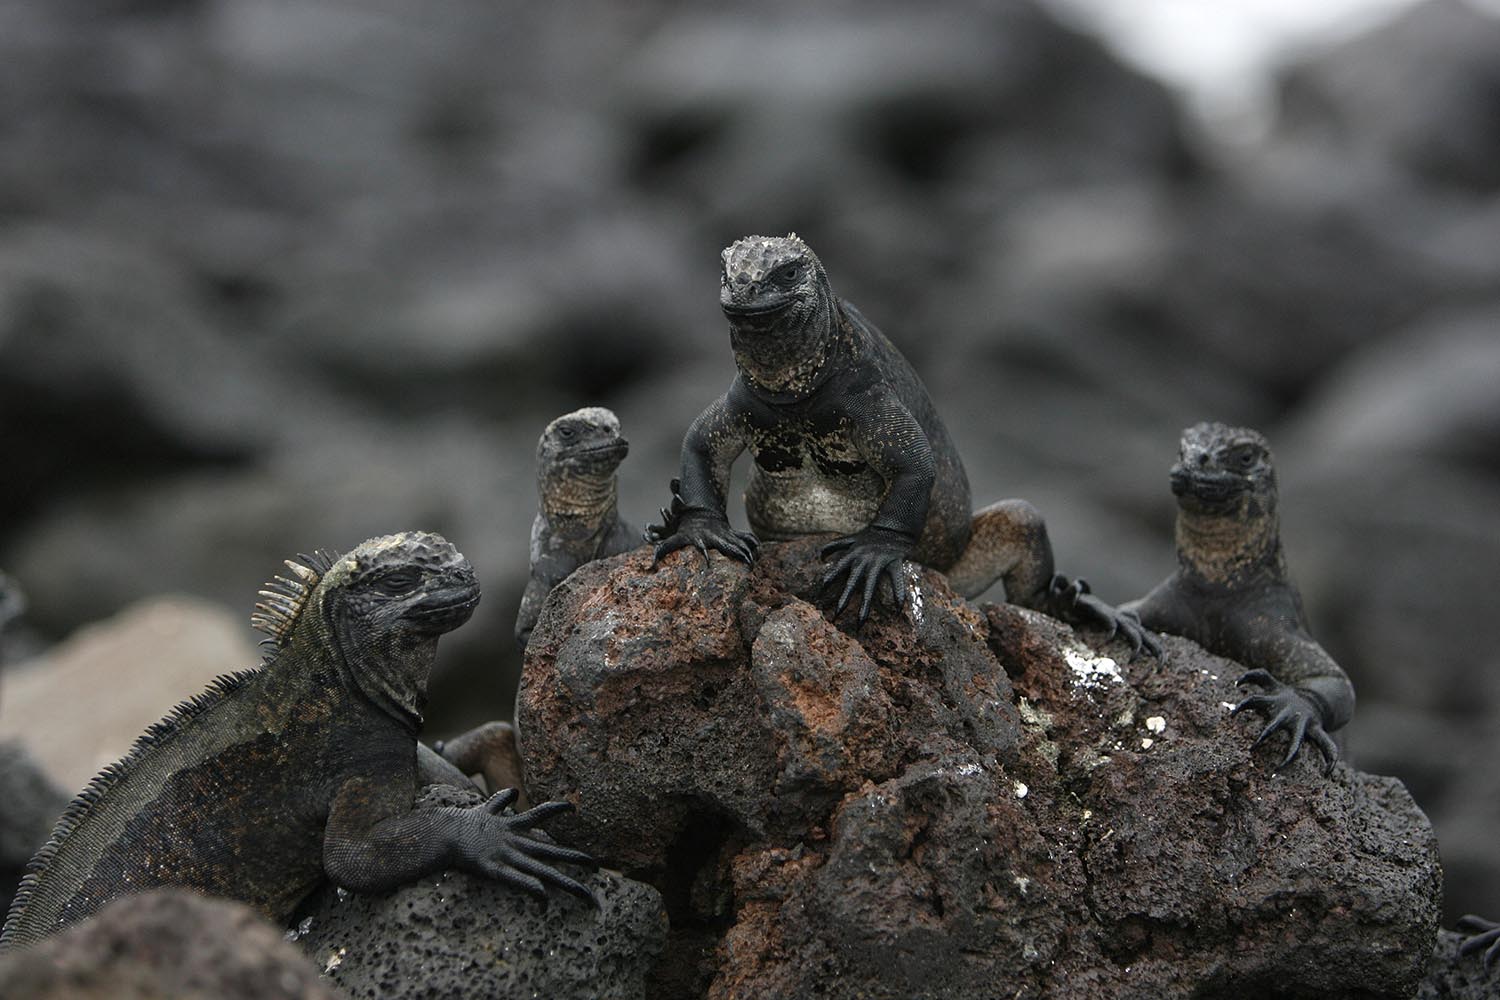 Especial Galápagos. La iguana marina es una especie que sólo existe en las Galápagos